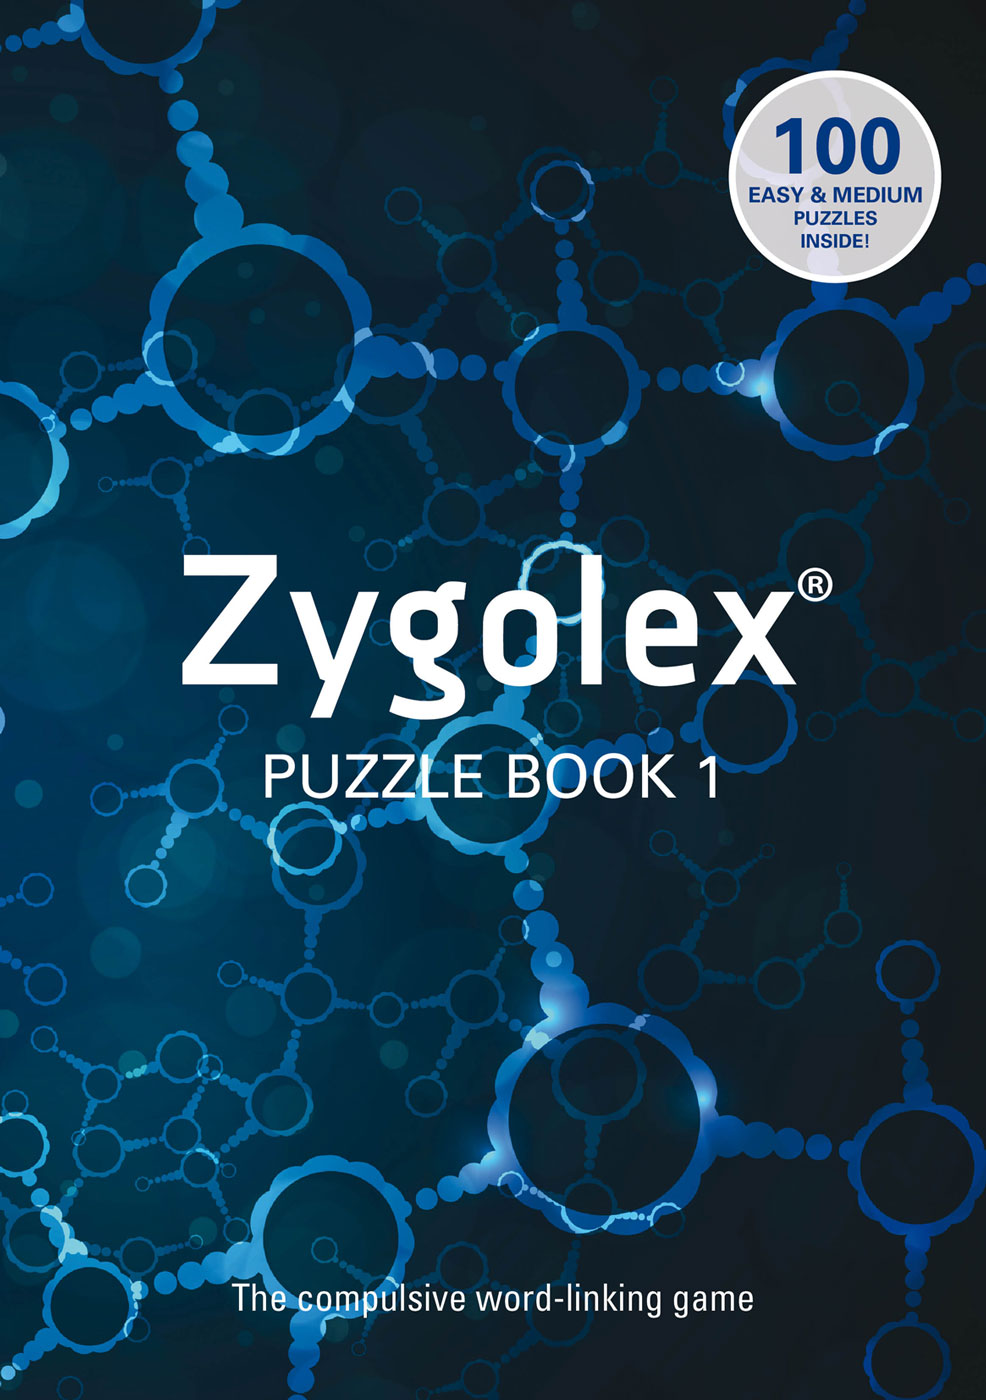 Zygolex book 1